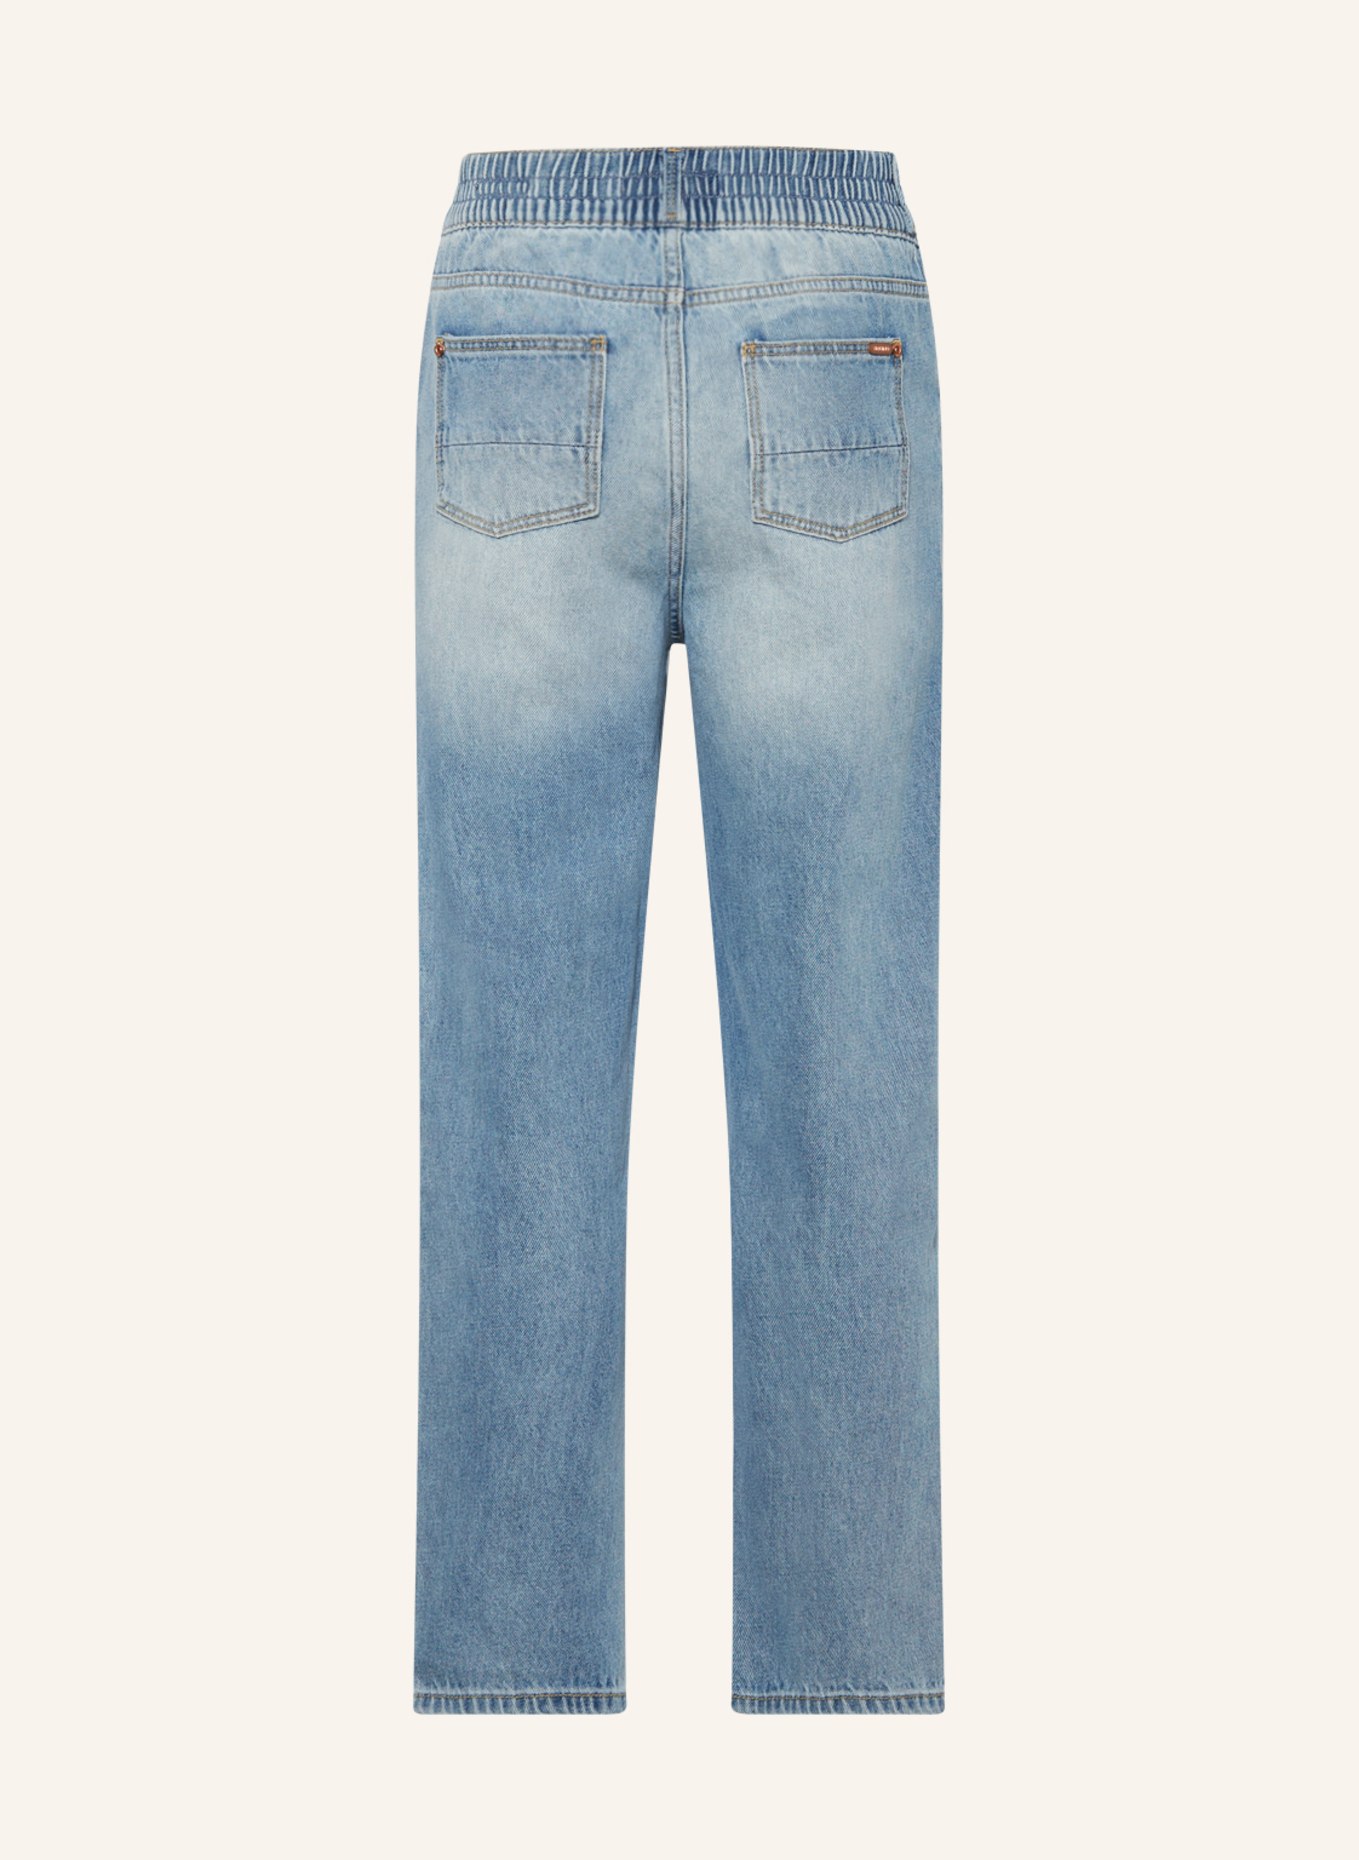 VINGINO Jeans CHIARA, Farbe: OLD VINTAGE (Bild 2)